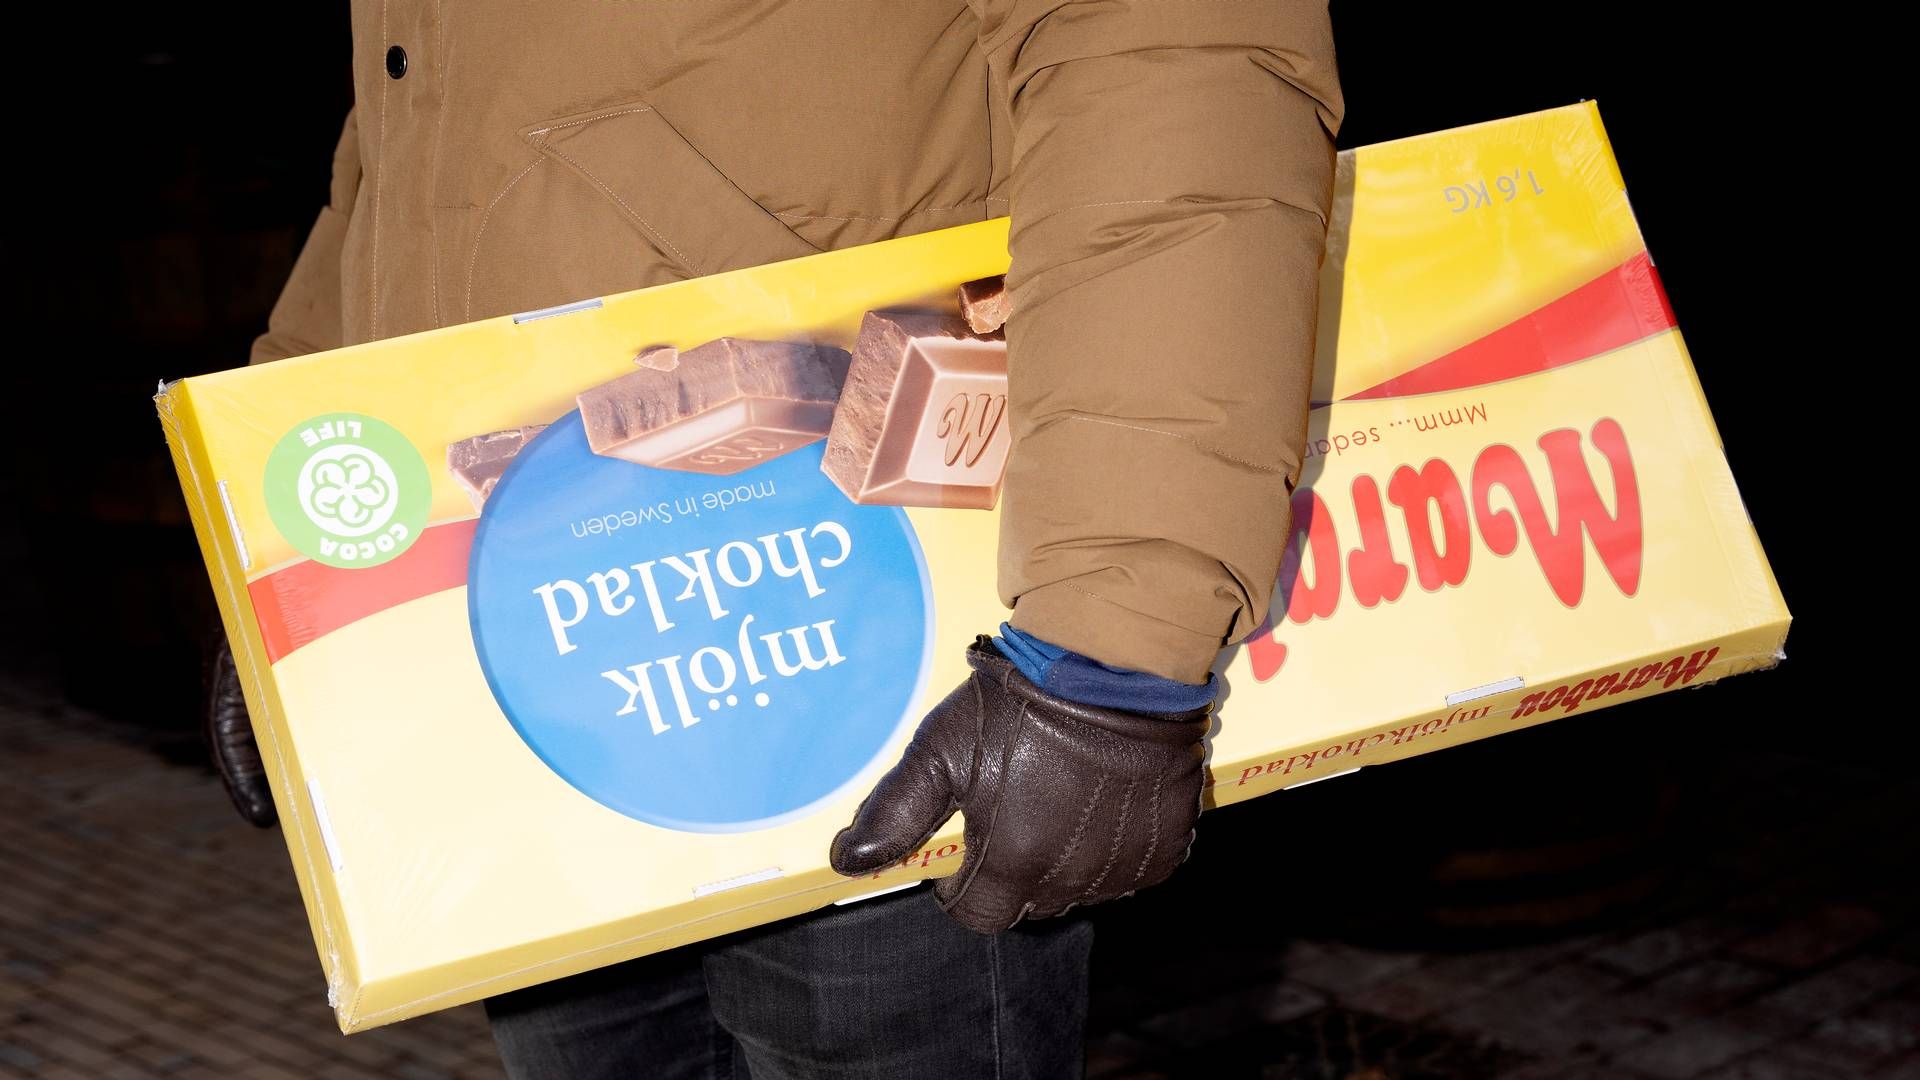 Det kendte chokolademærke Marabou havnede i søgelyset sidste år, da ejeren, fødevaregiganten Mondelez, havnede på Ukraines liste over selskaber, der har aktiviteter i Rusland og dermed er blevet sortlistet af ukrainske myndigheder. | Foto: Thomas Borberg/Ritzau Scanpix